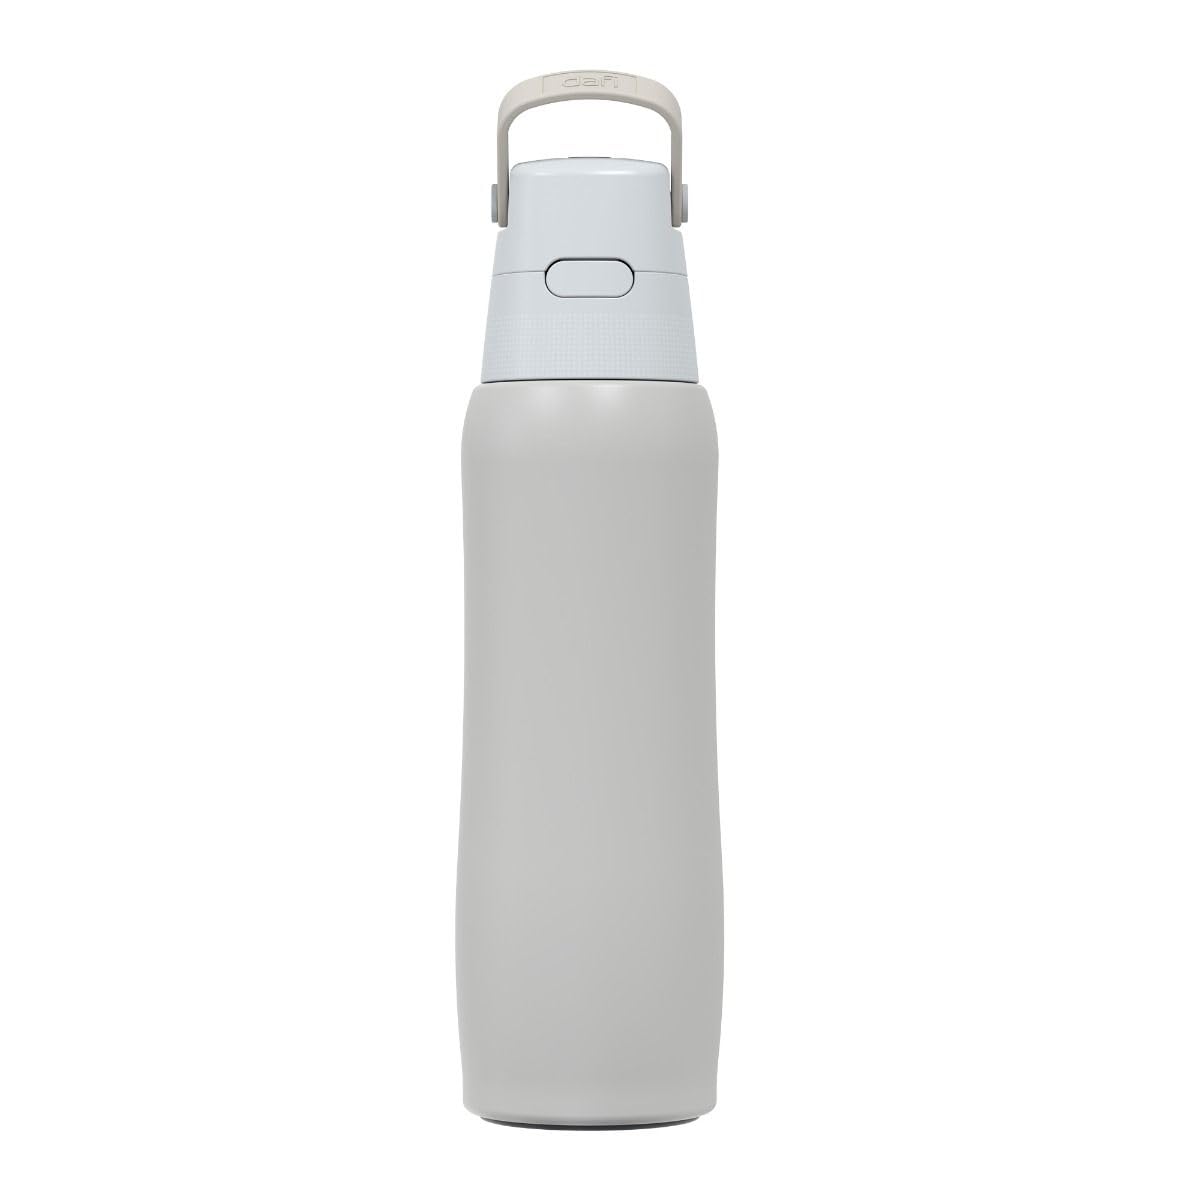 DAFI Solid Steel Trinkflasche mit Filter, 800ml | Perlweiß | Wasserflasche mit Strohhalm aus Edelstahl | BPA-frei, Wasserfilterflasche hergestellt in der EU | Water Bottle, Wasserfilter Flasche